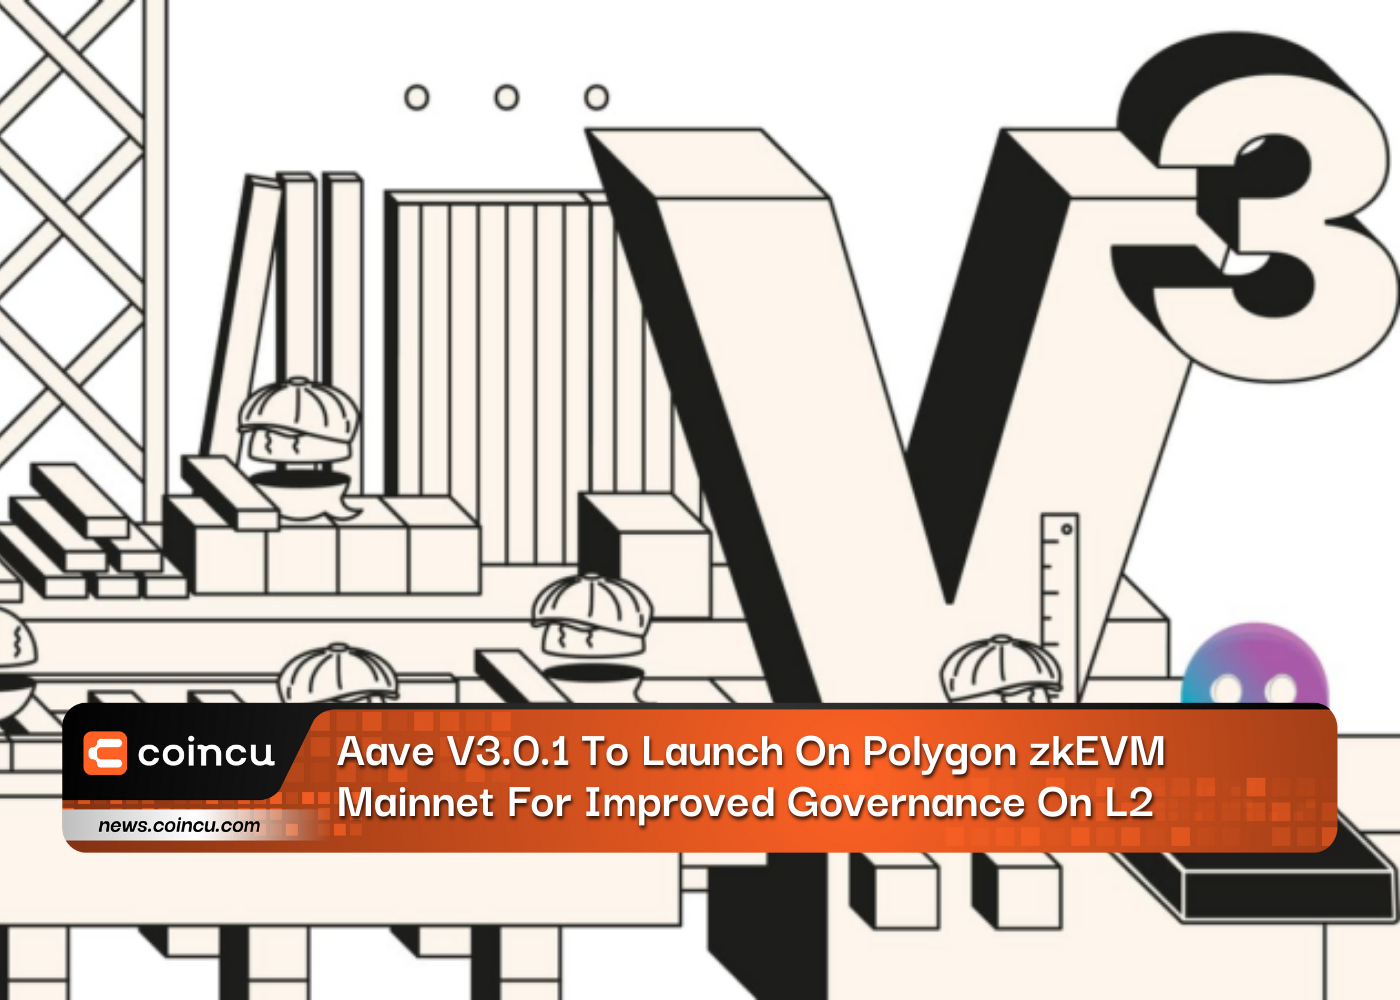 Aave V3.0.1 wird auf dem Polygon zkEVM-Mainnet gestartet, um die Governance auf L2 zu verbessern